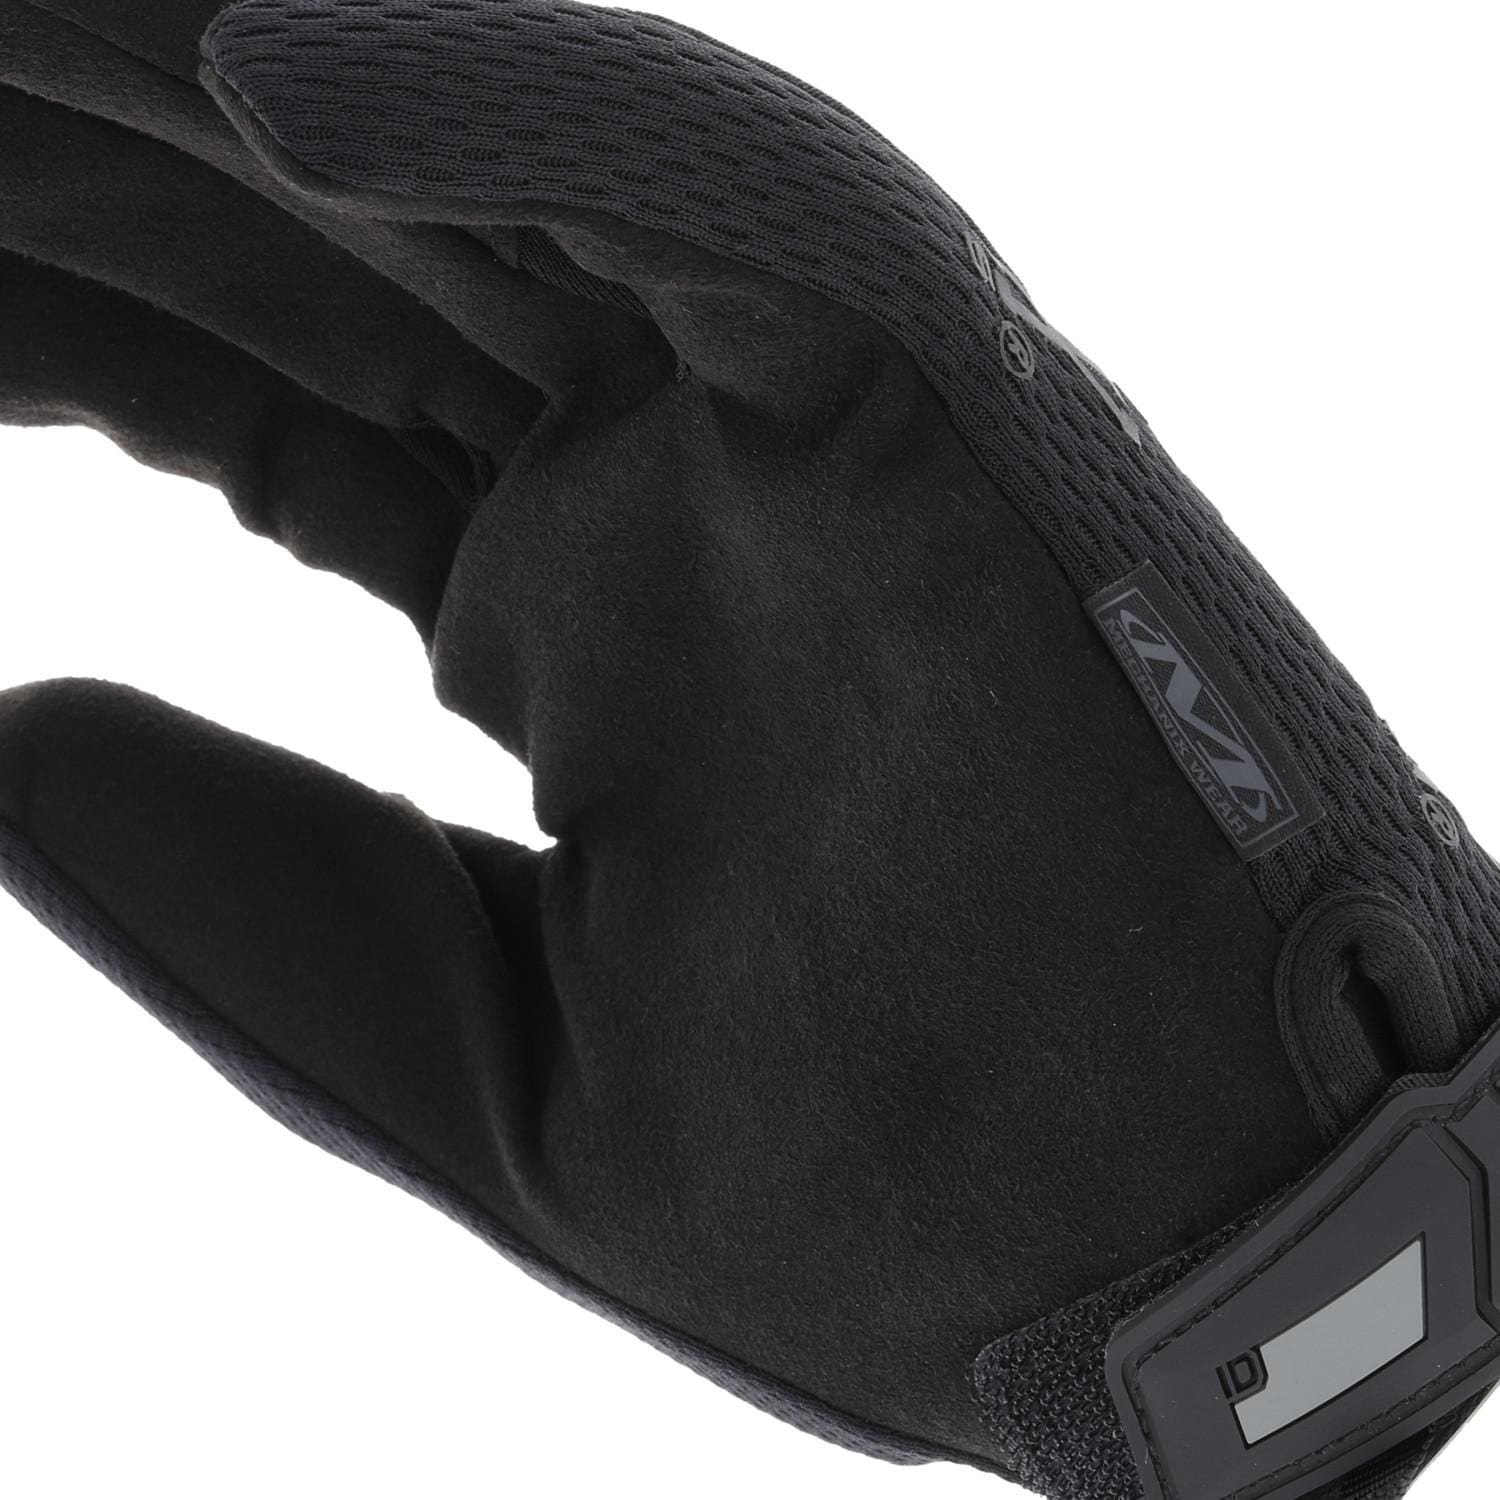 Guantes Tácticos, modelo The Original Glove. Marca Mechanix Wear. negro.